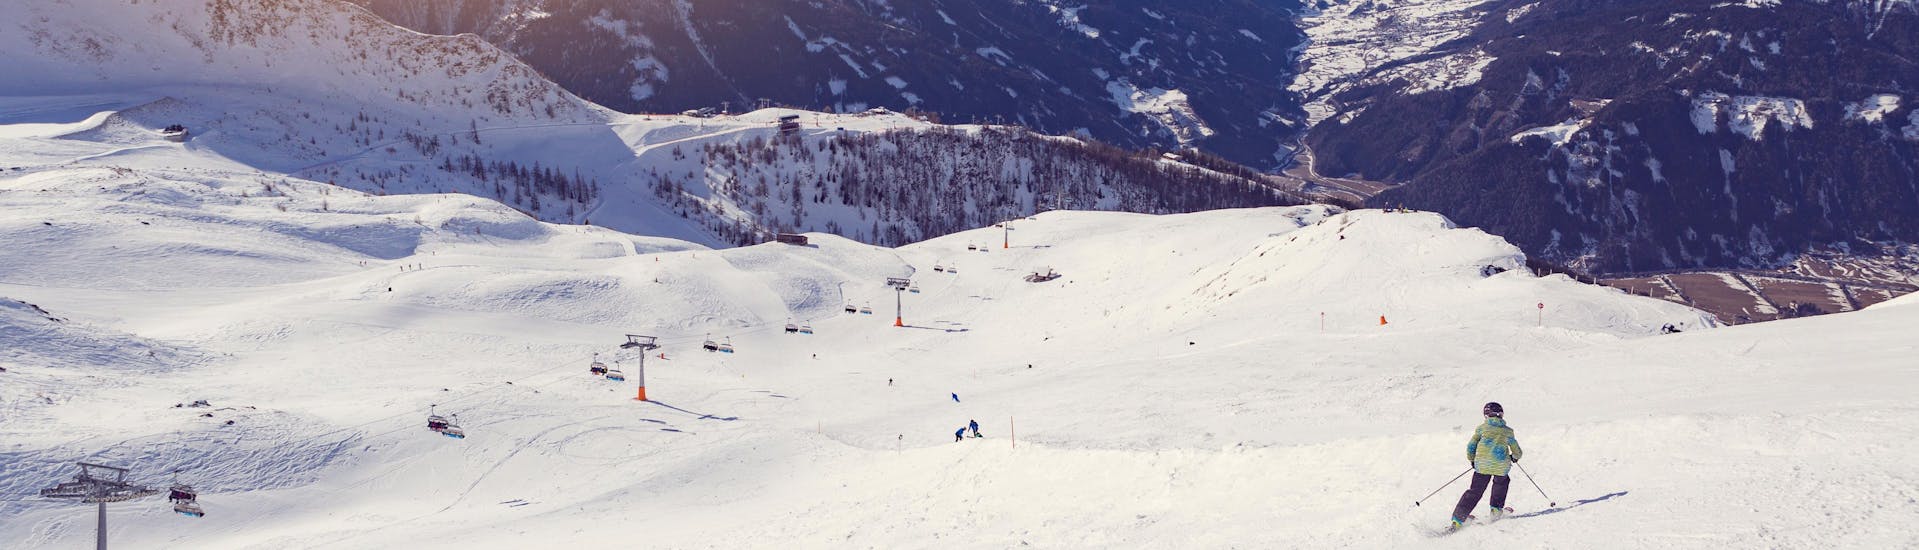 Ausblick auf die sonnige Berglandschaft beim Skifahren lernen mit den Skischulen in Kals am Großglockner.